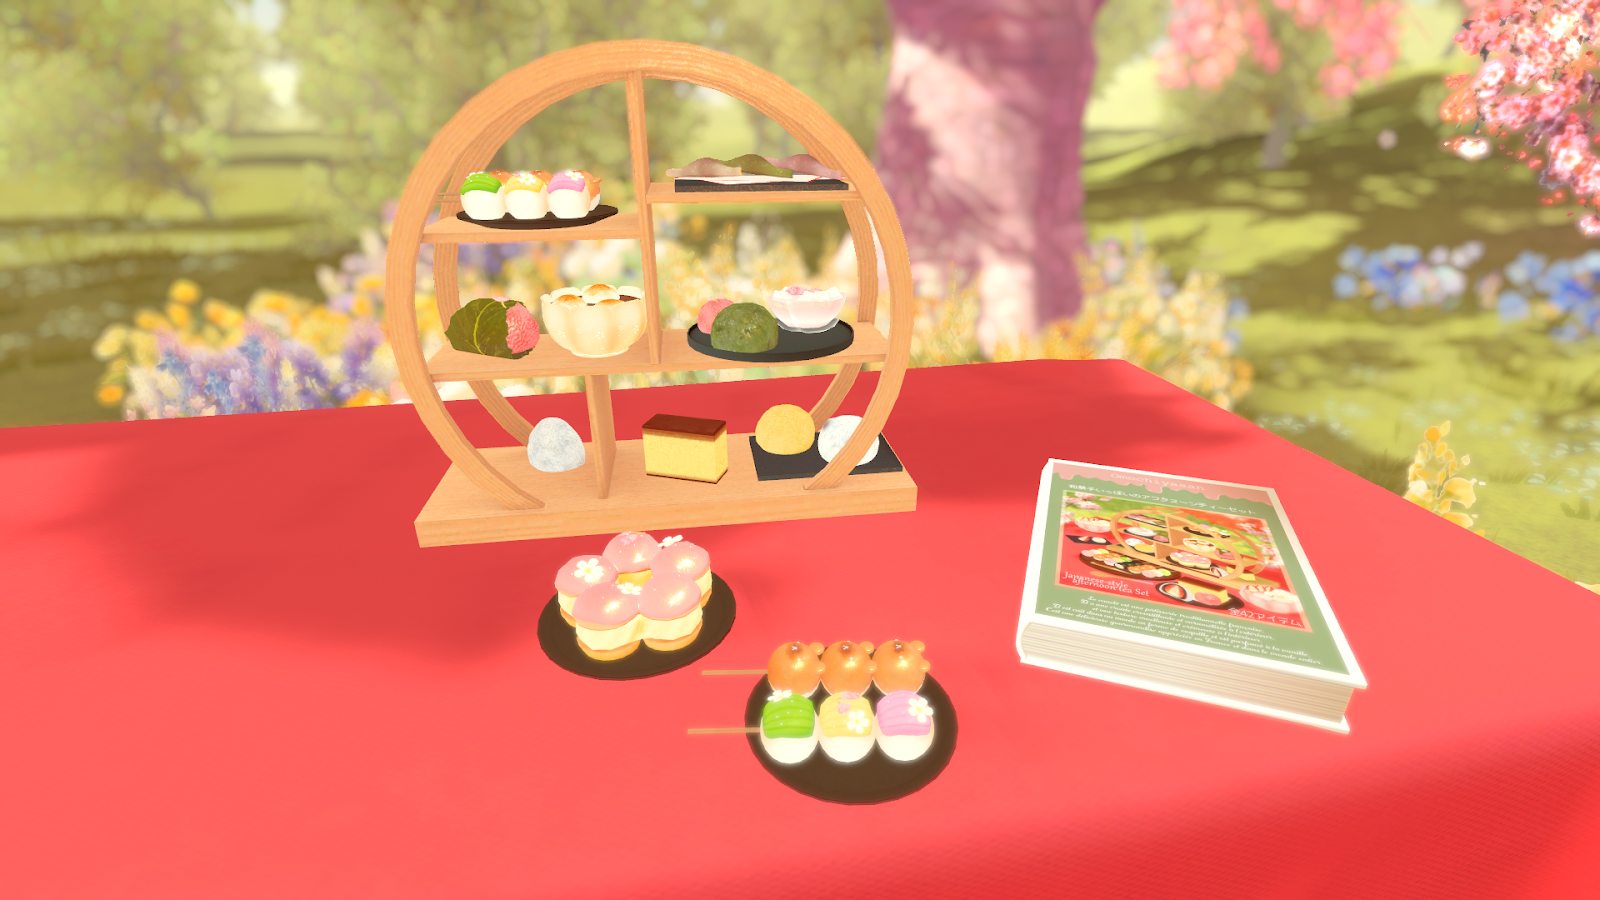 縁台の上には美味しそうな和菓子が並べられている。団子、桜餅、カステラなどなど。